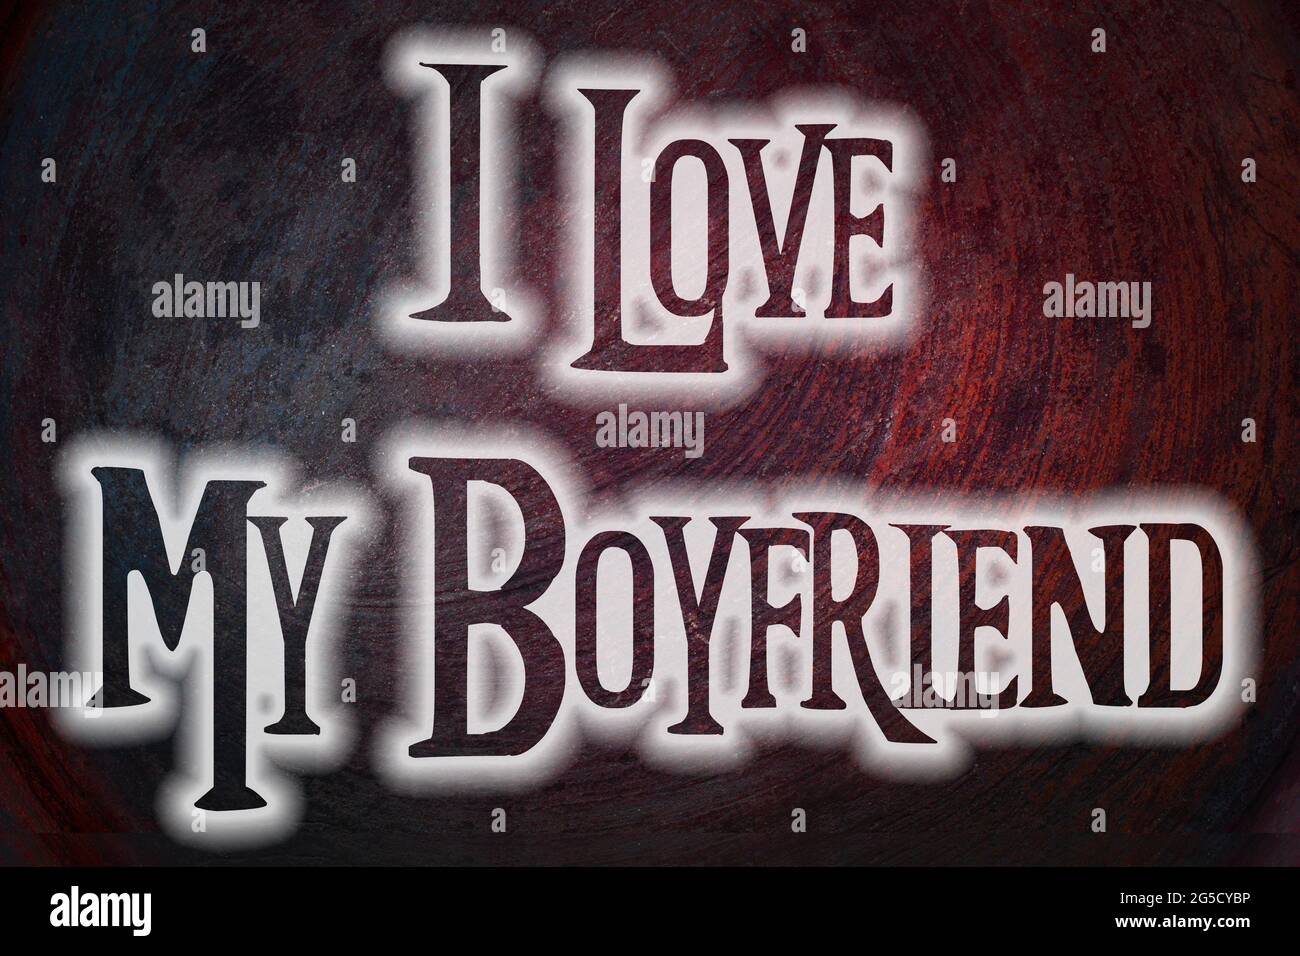 i love my boyfriend profile picture pfp  Love my boyfriend Pretty quotes I  love my girlfriend